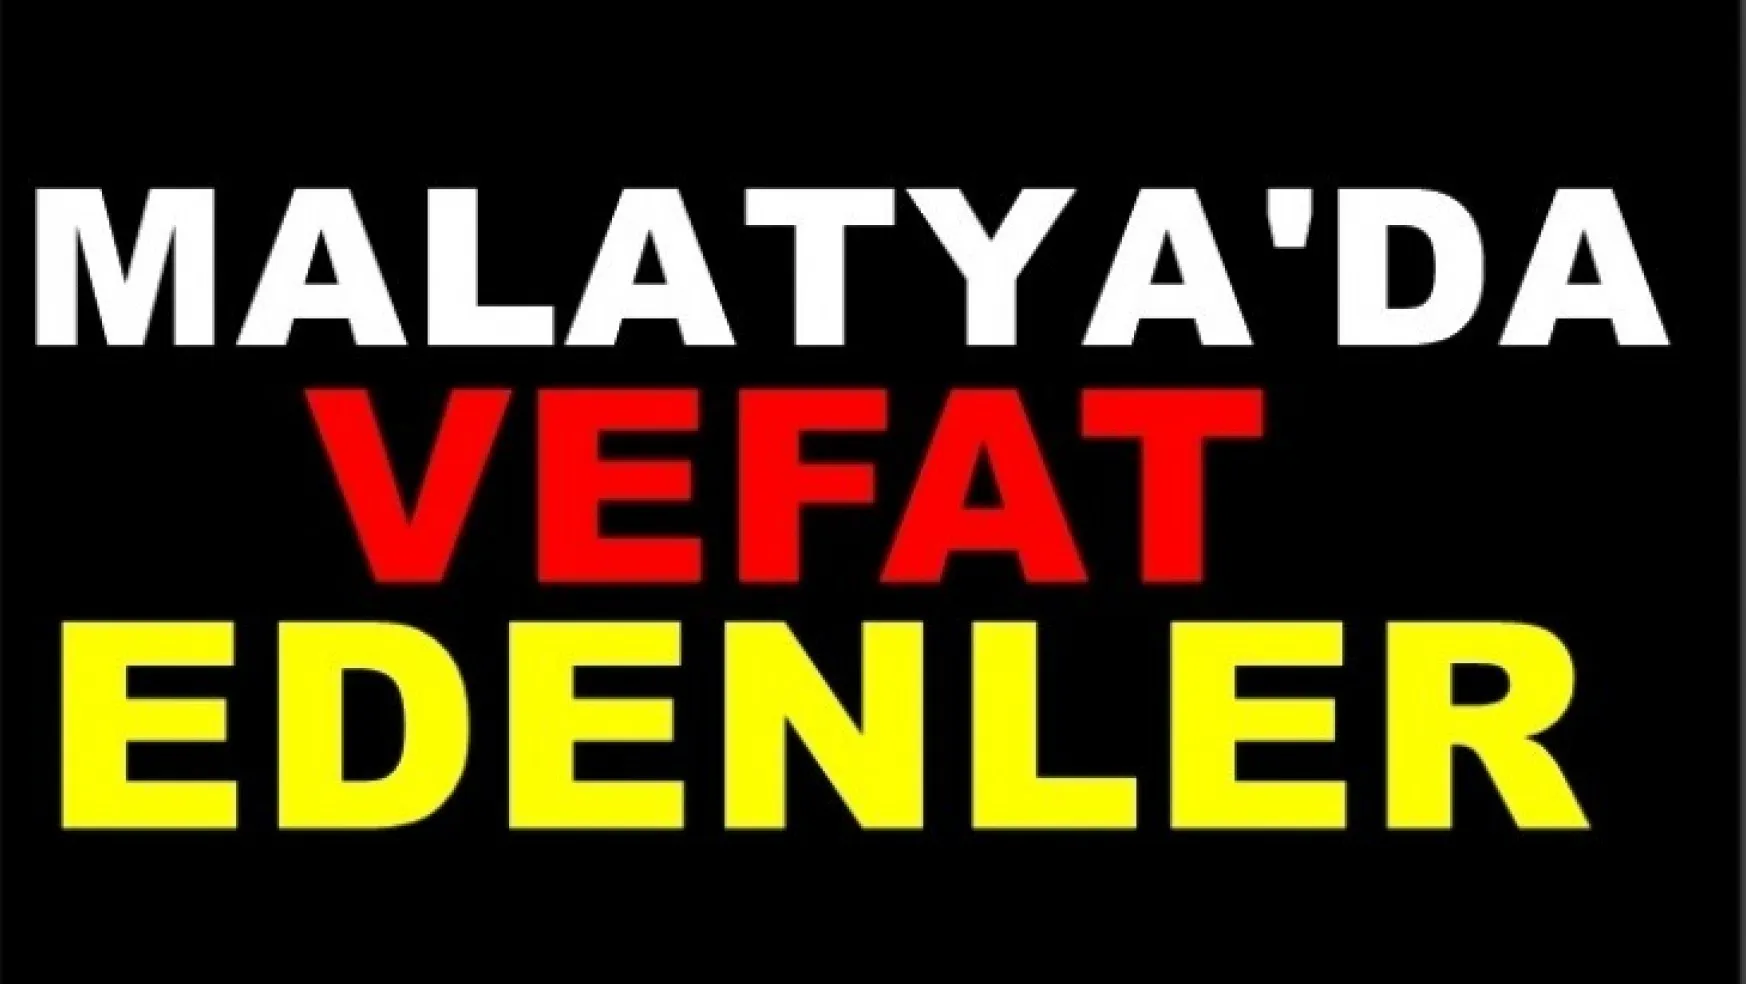 Malatya'da Bugün 5 Kişi Vefat Etti